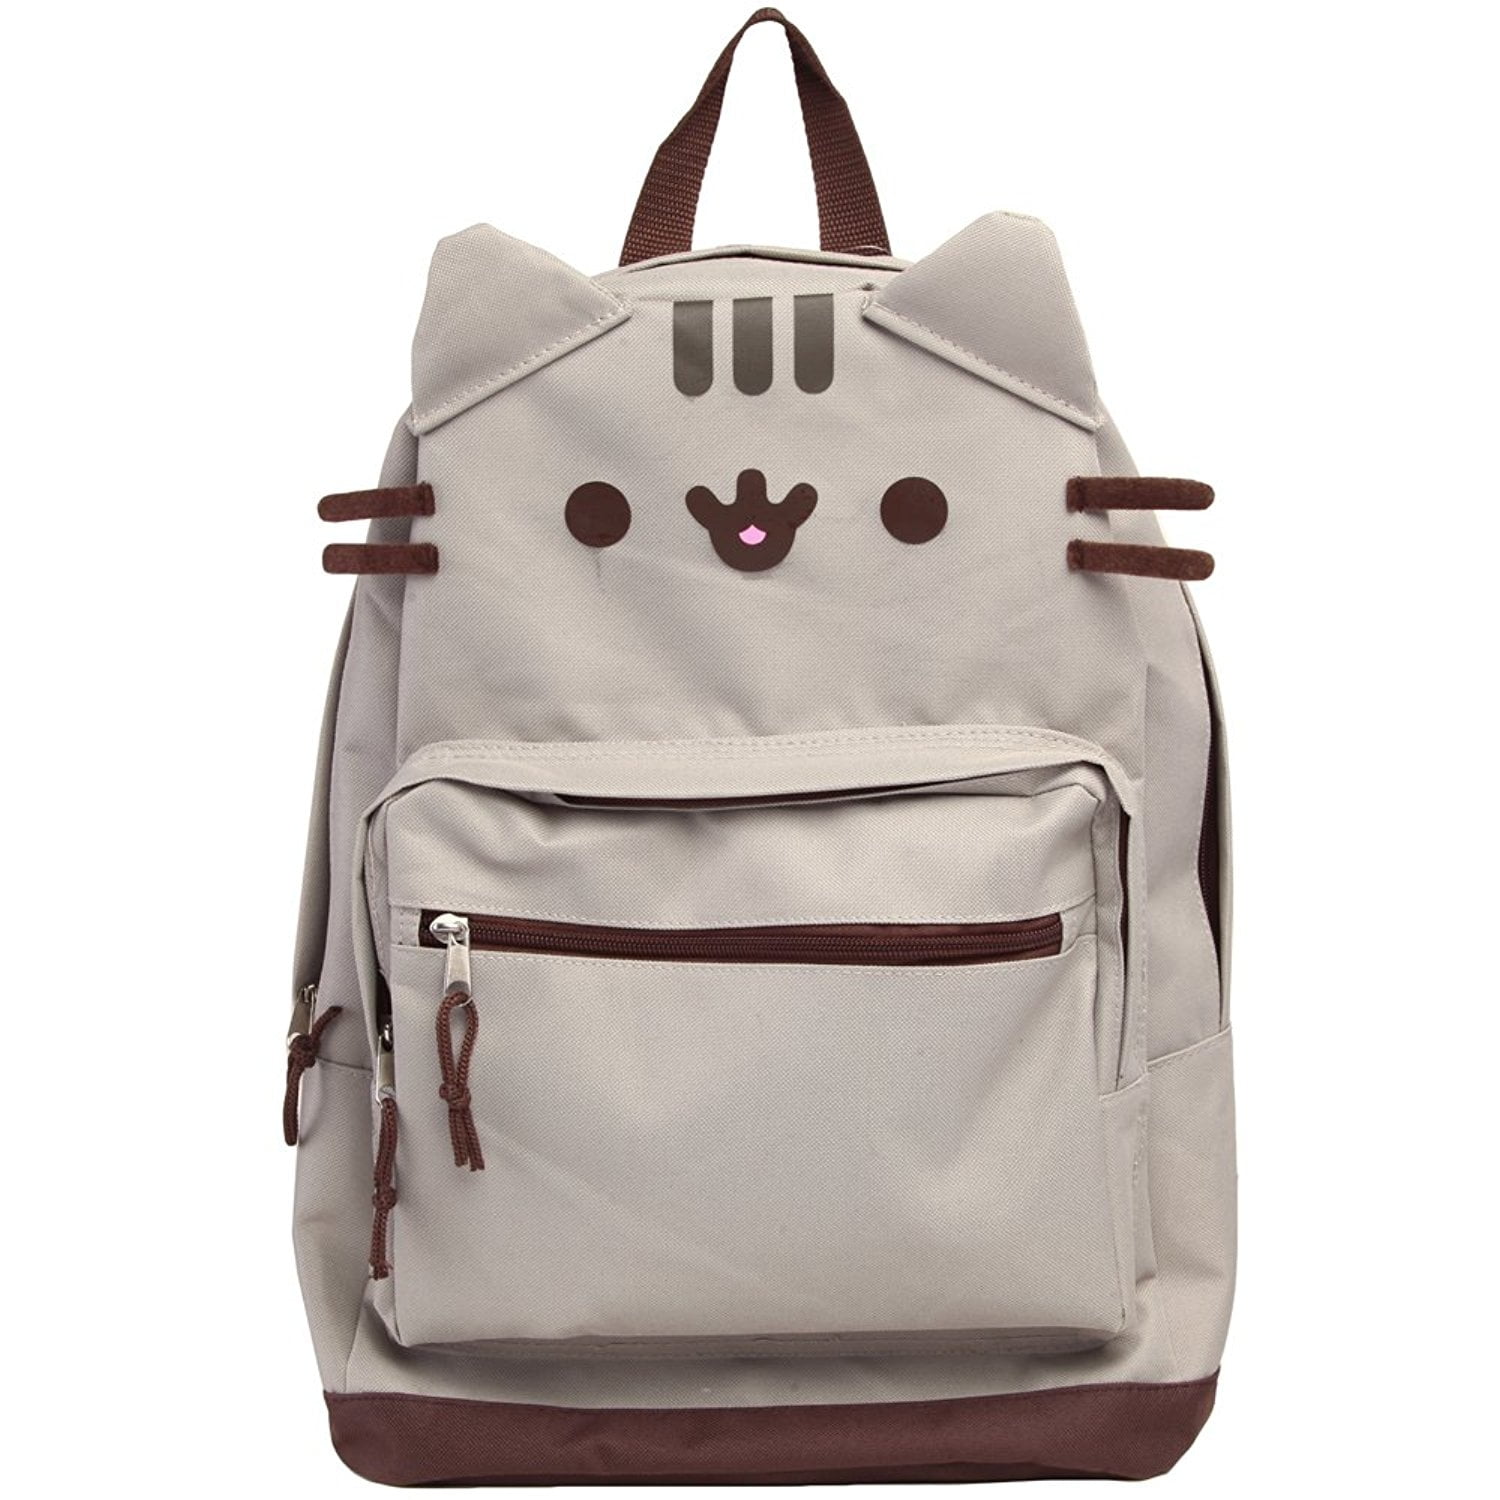 Pusheen Cat Face Backpack Standard Kids School Book Bag Travel Gear Accessories